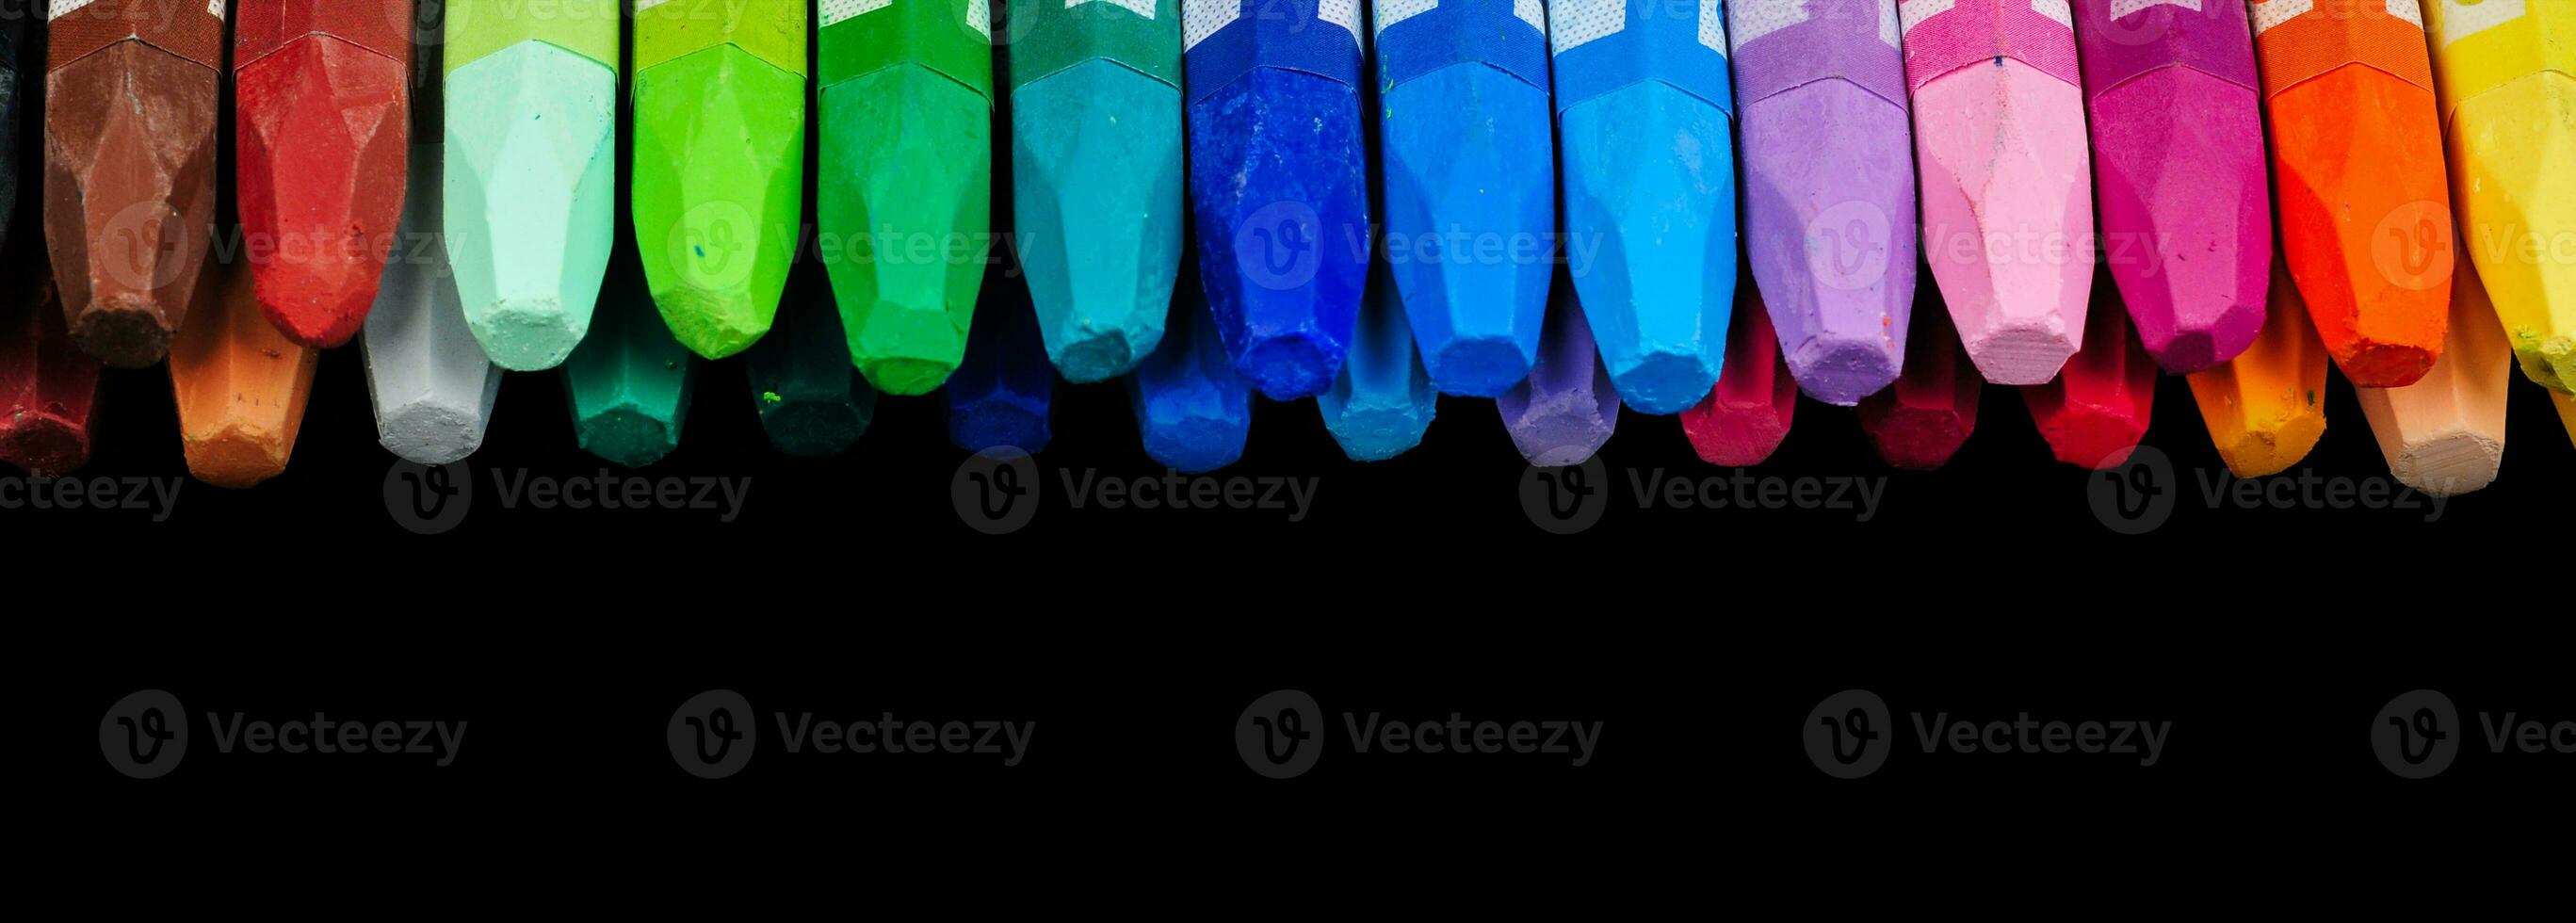 un colección de pulcramente arreglado lápiz de color palos visible desde encima en un fila de vistoso colores foto